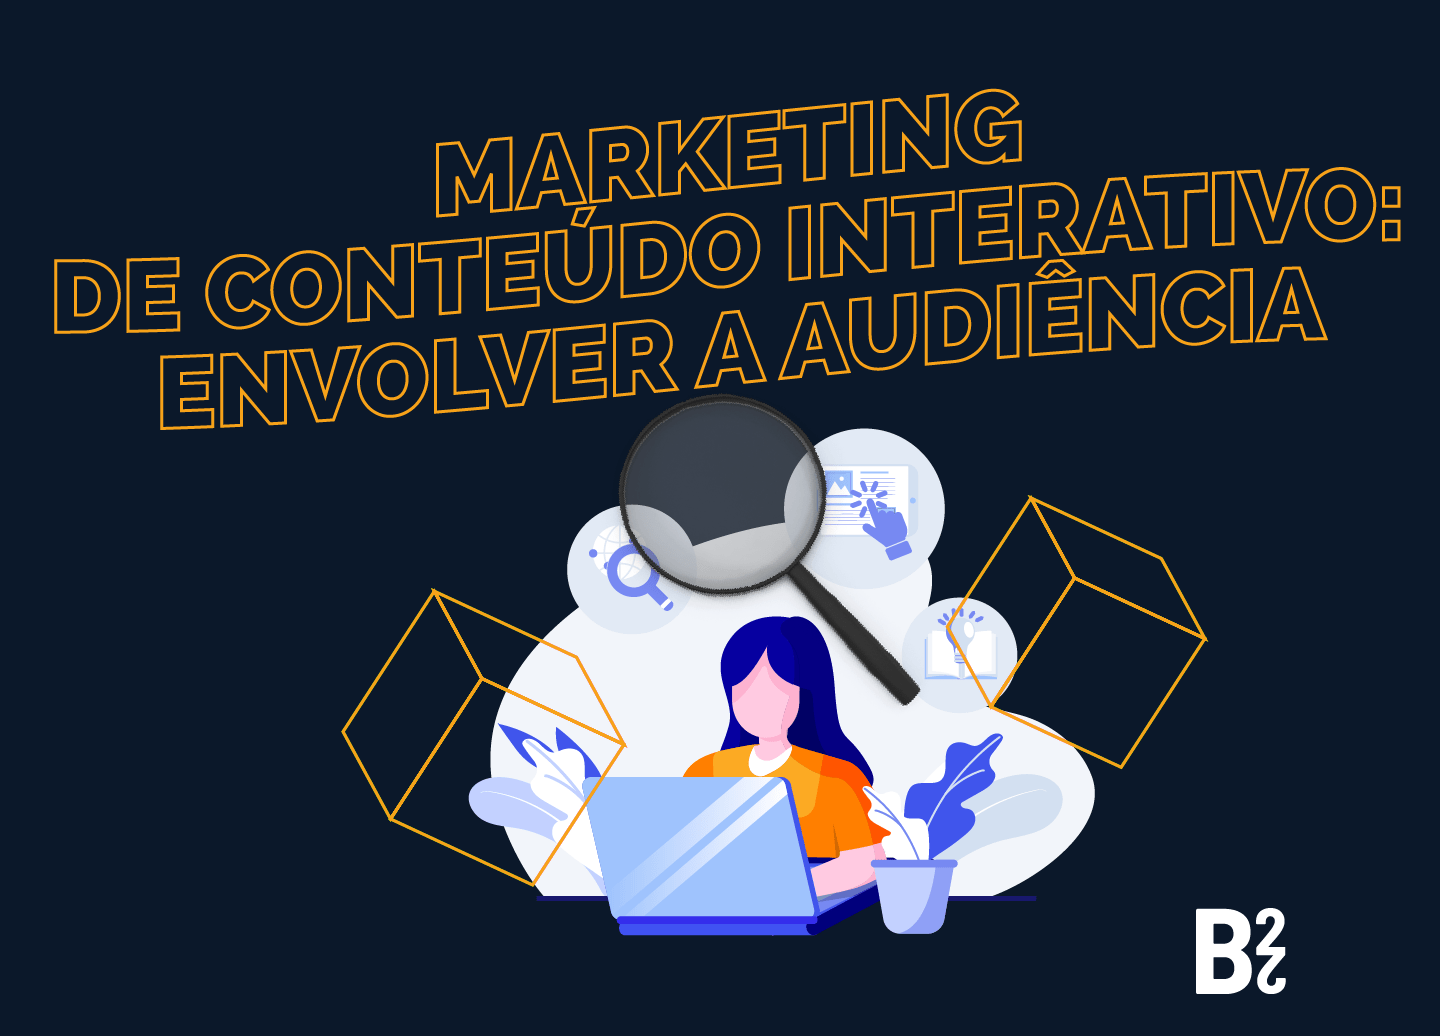 Marketing de Conteúdo Interativo: envolver a audiência